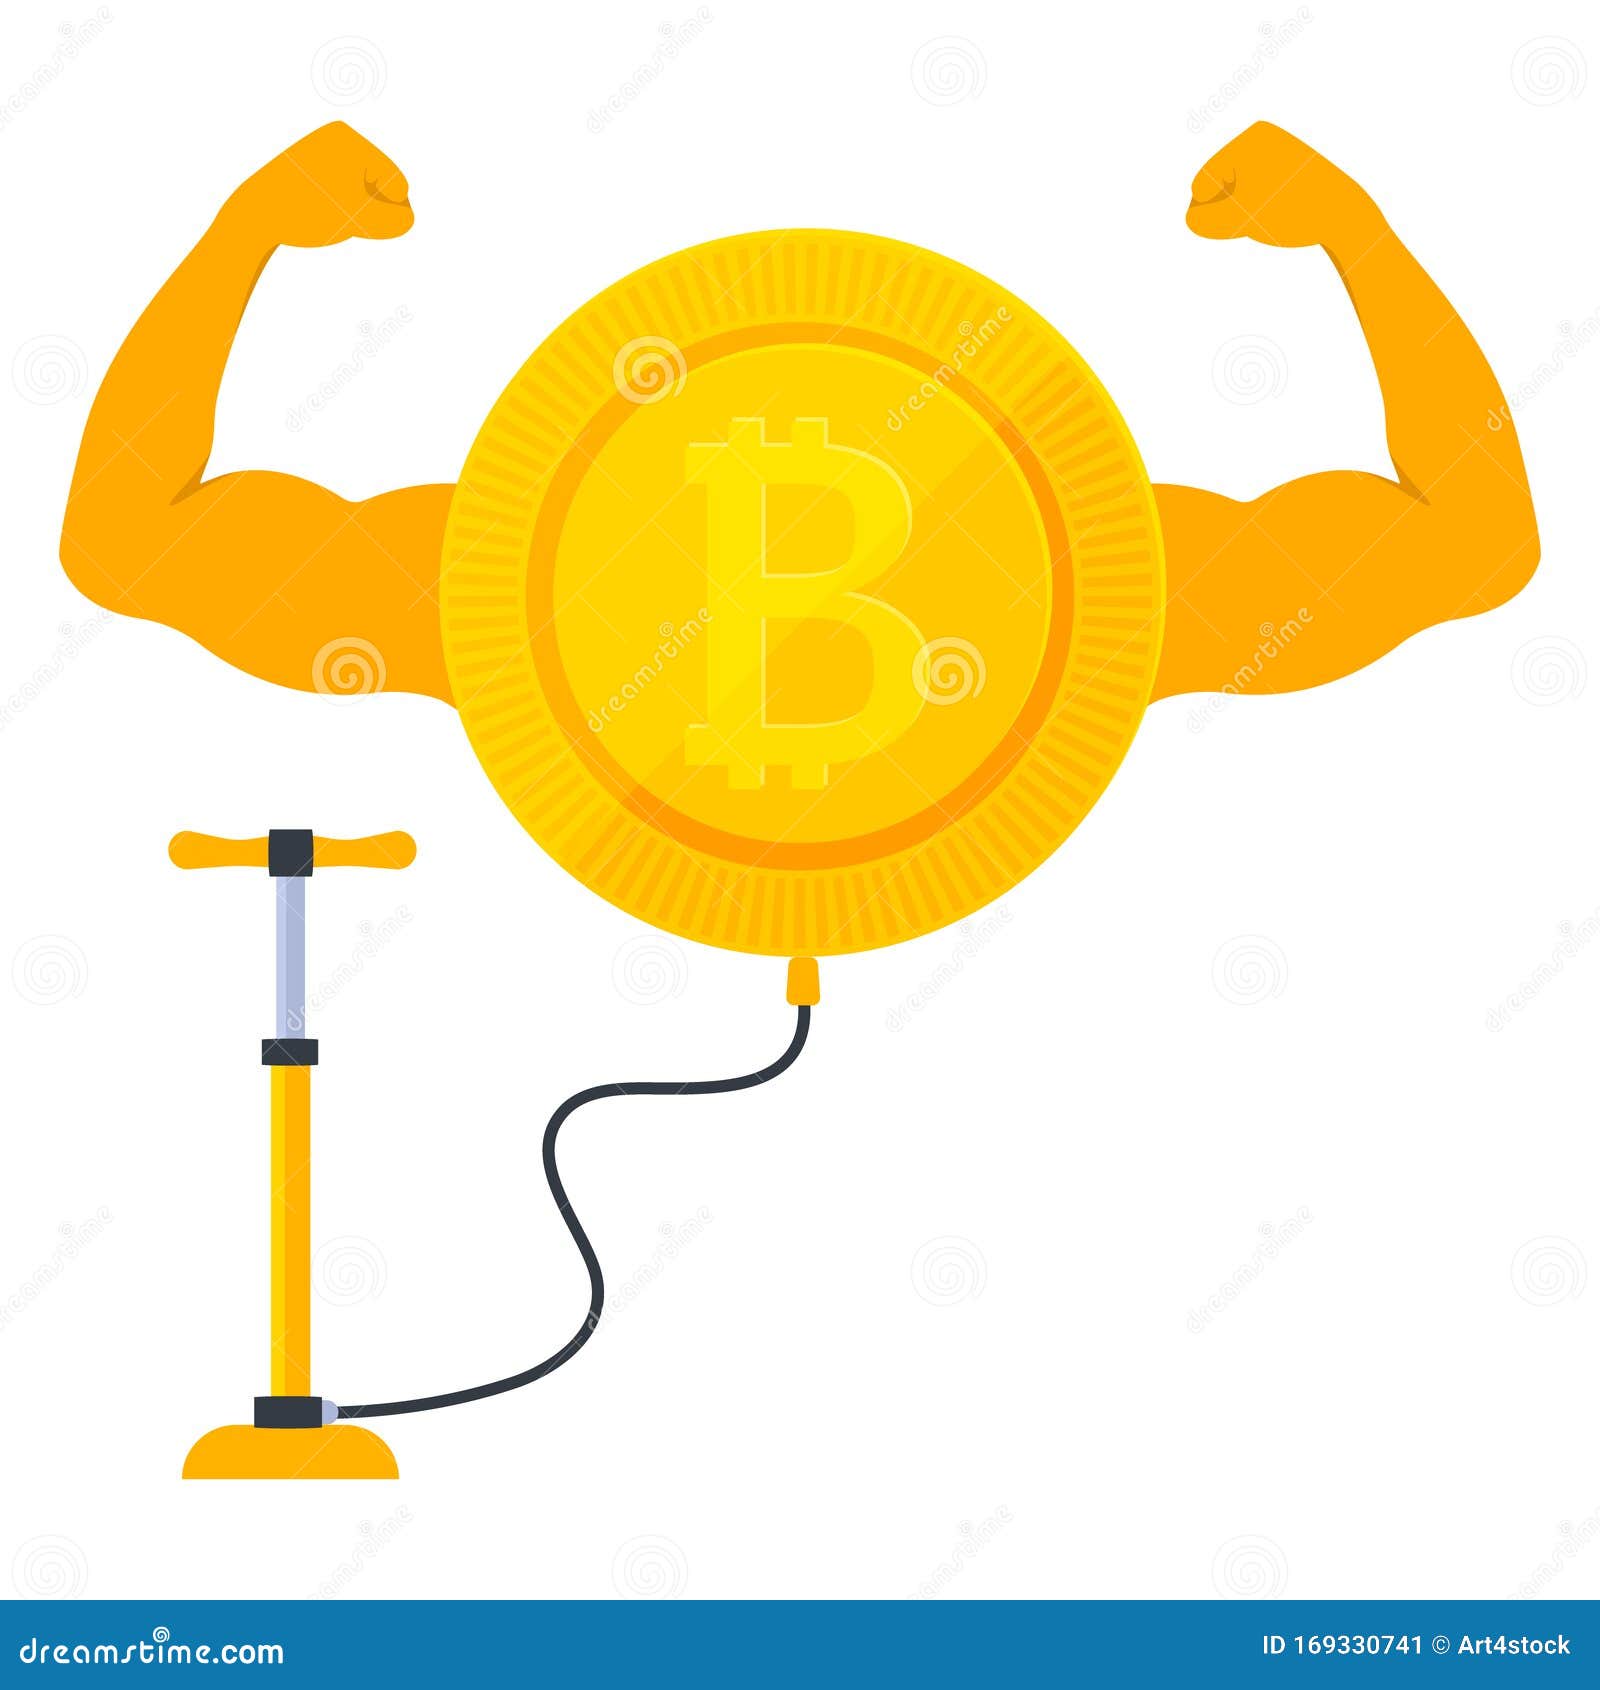 bitcoin pump)